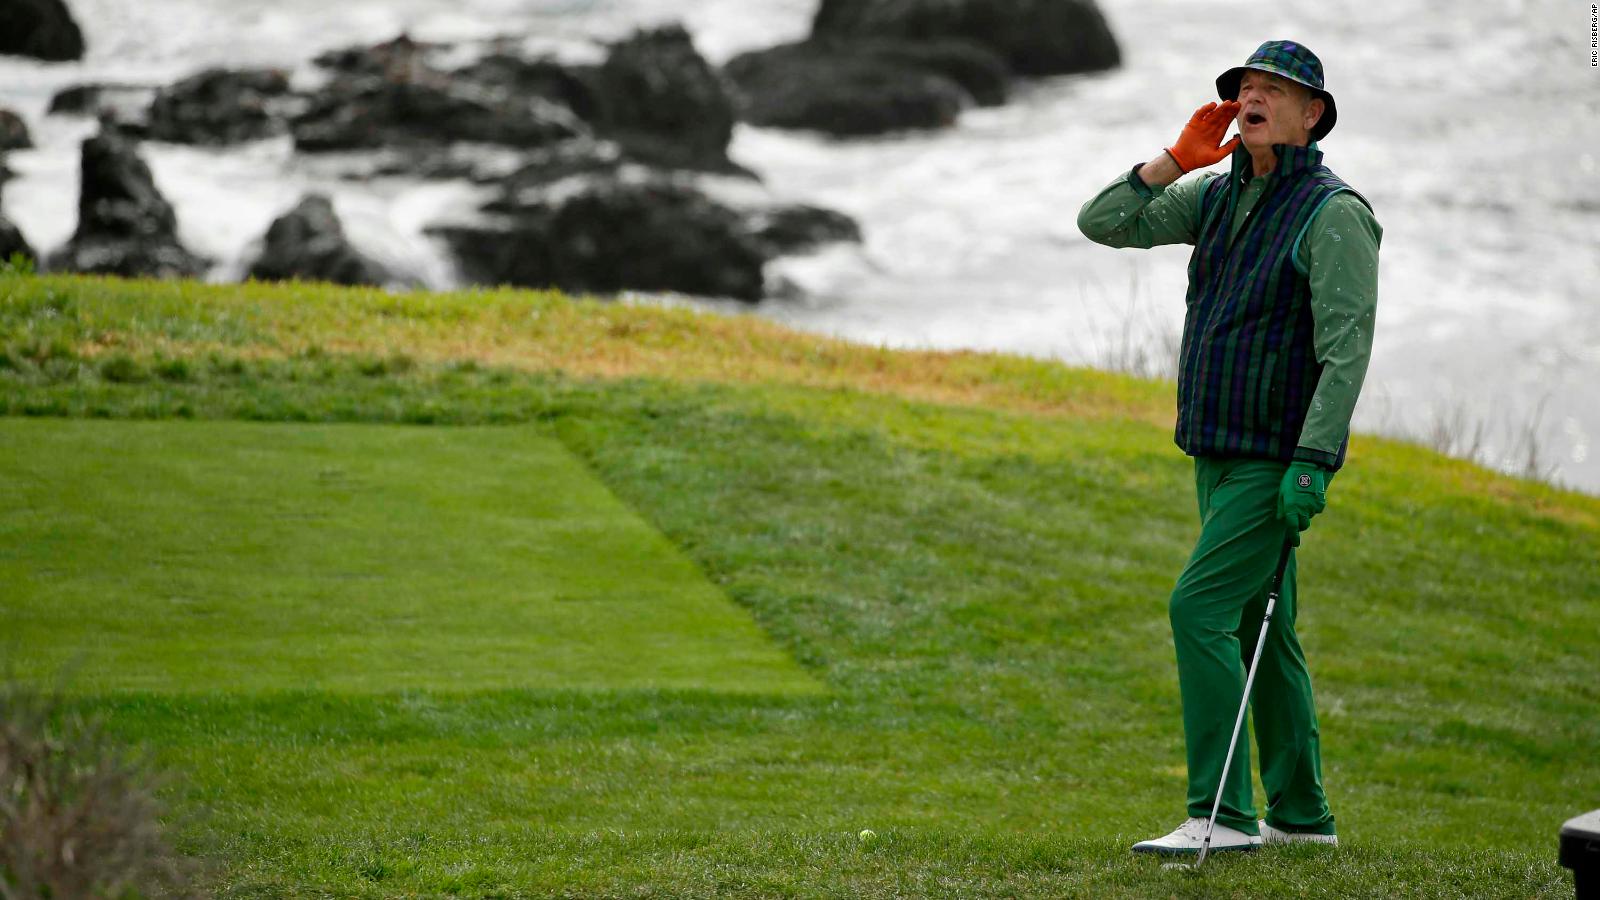 Bill Murray had fun at the Pebble Beach ProAm golf tournament CNN